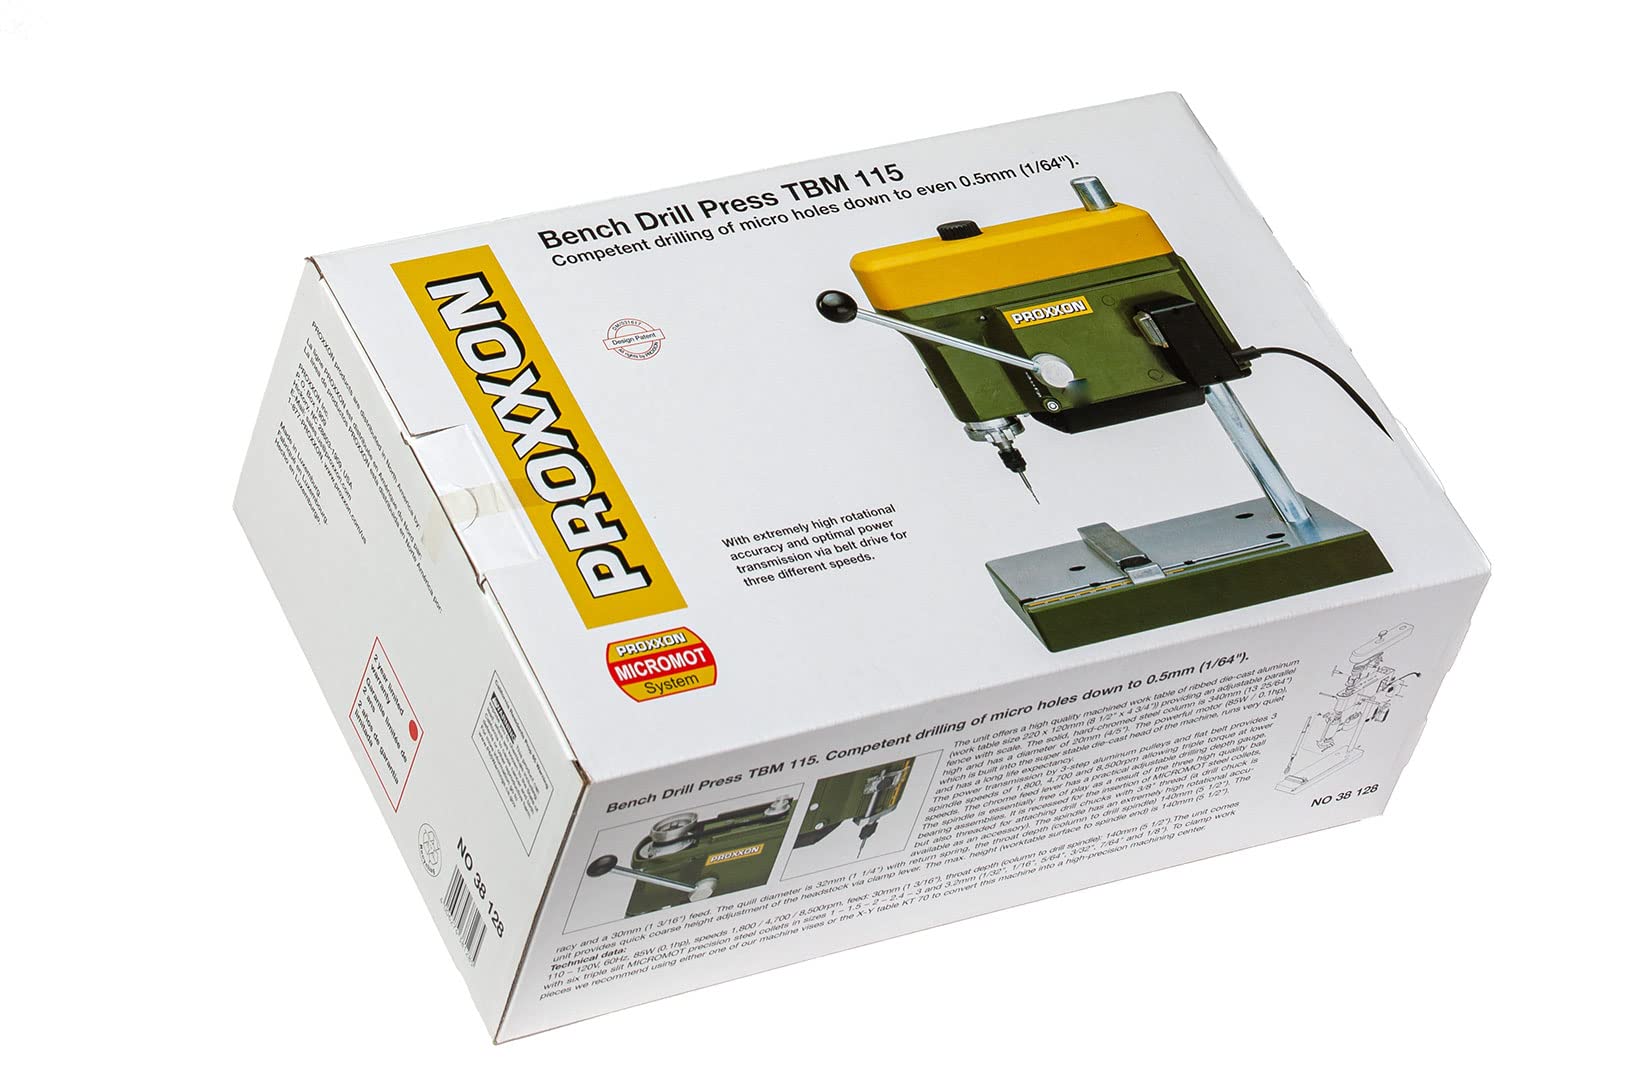 PROXXON Bench Drill Press TBM 115, 38128 , Green